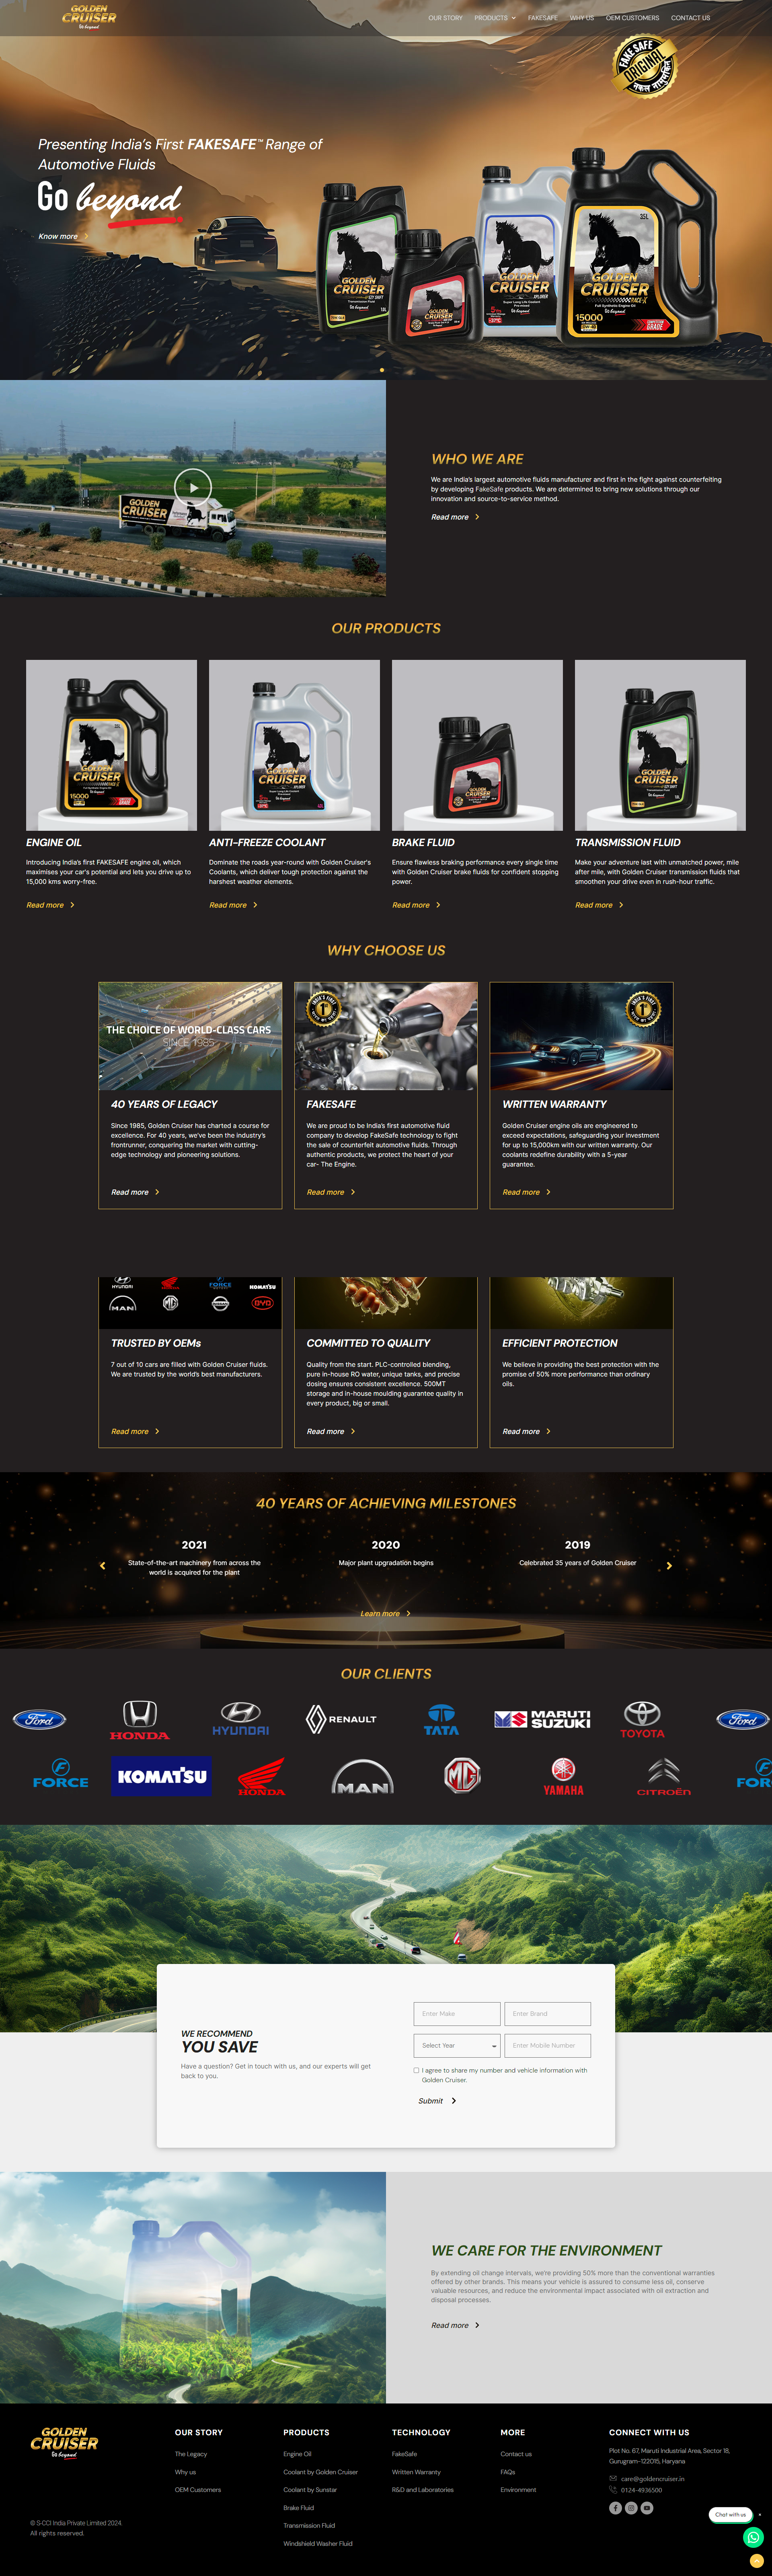 golden cruiser website screenshot